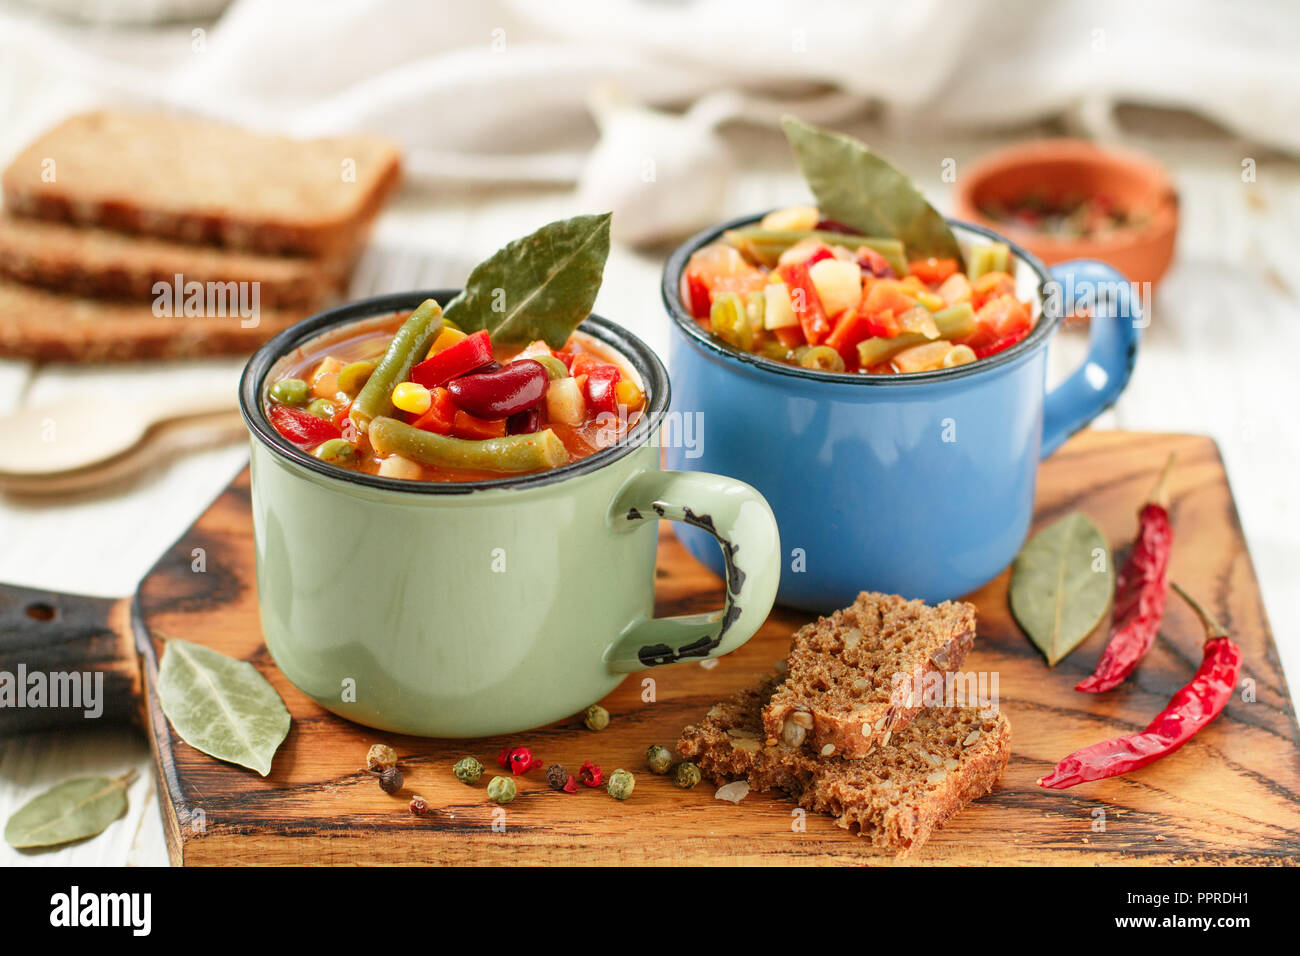 Eintopf - soupe épaisse traditionnel allemand avec viande et légumes - pommes de terre, carottes, oignons, haricots rouges et verts, le maïs et les tomates avec un assaisonnement Banque D'Images